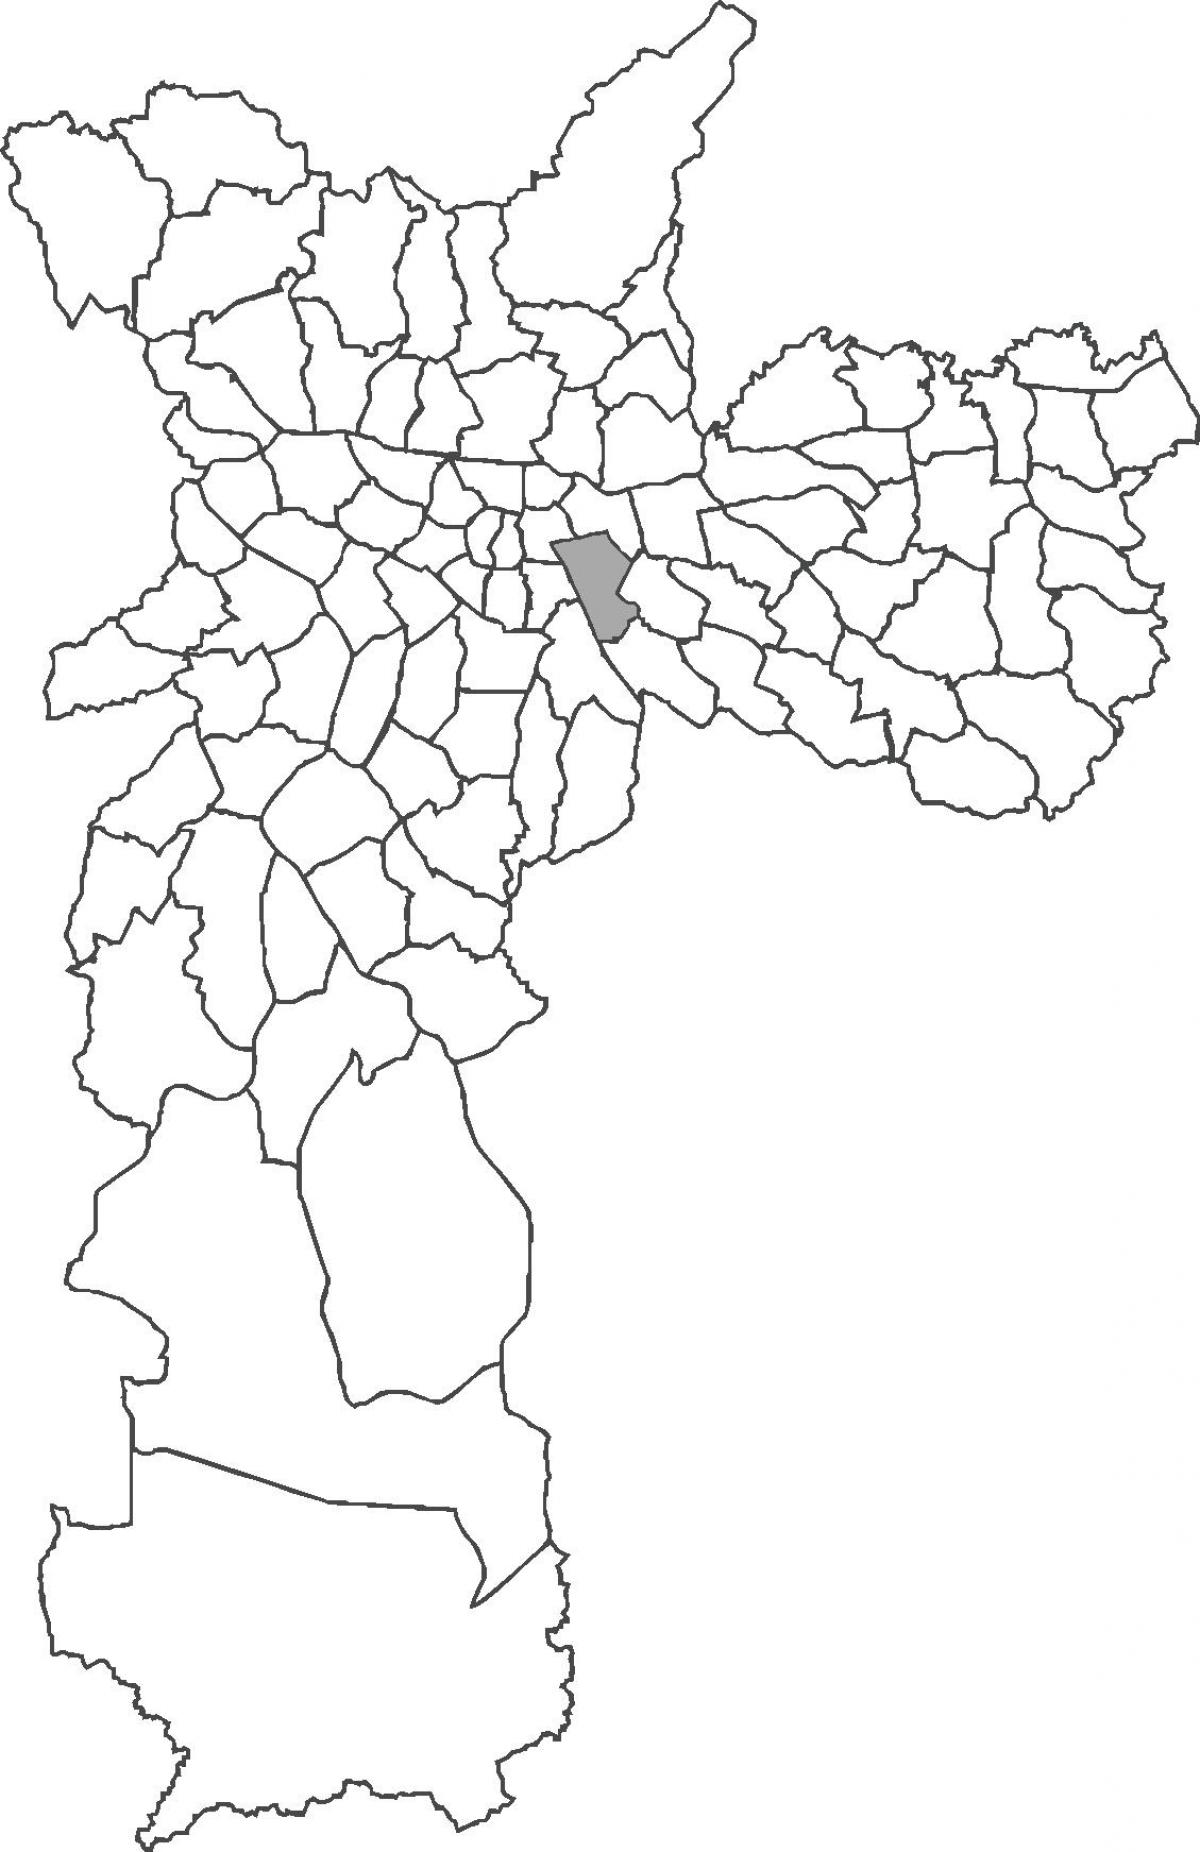 نقشہ کے Mooca ضلع